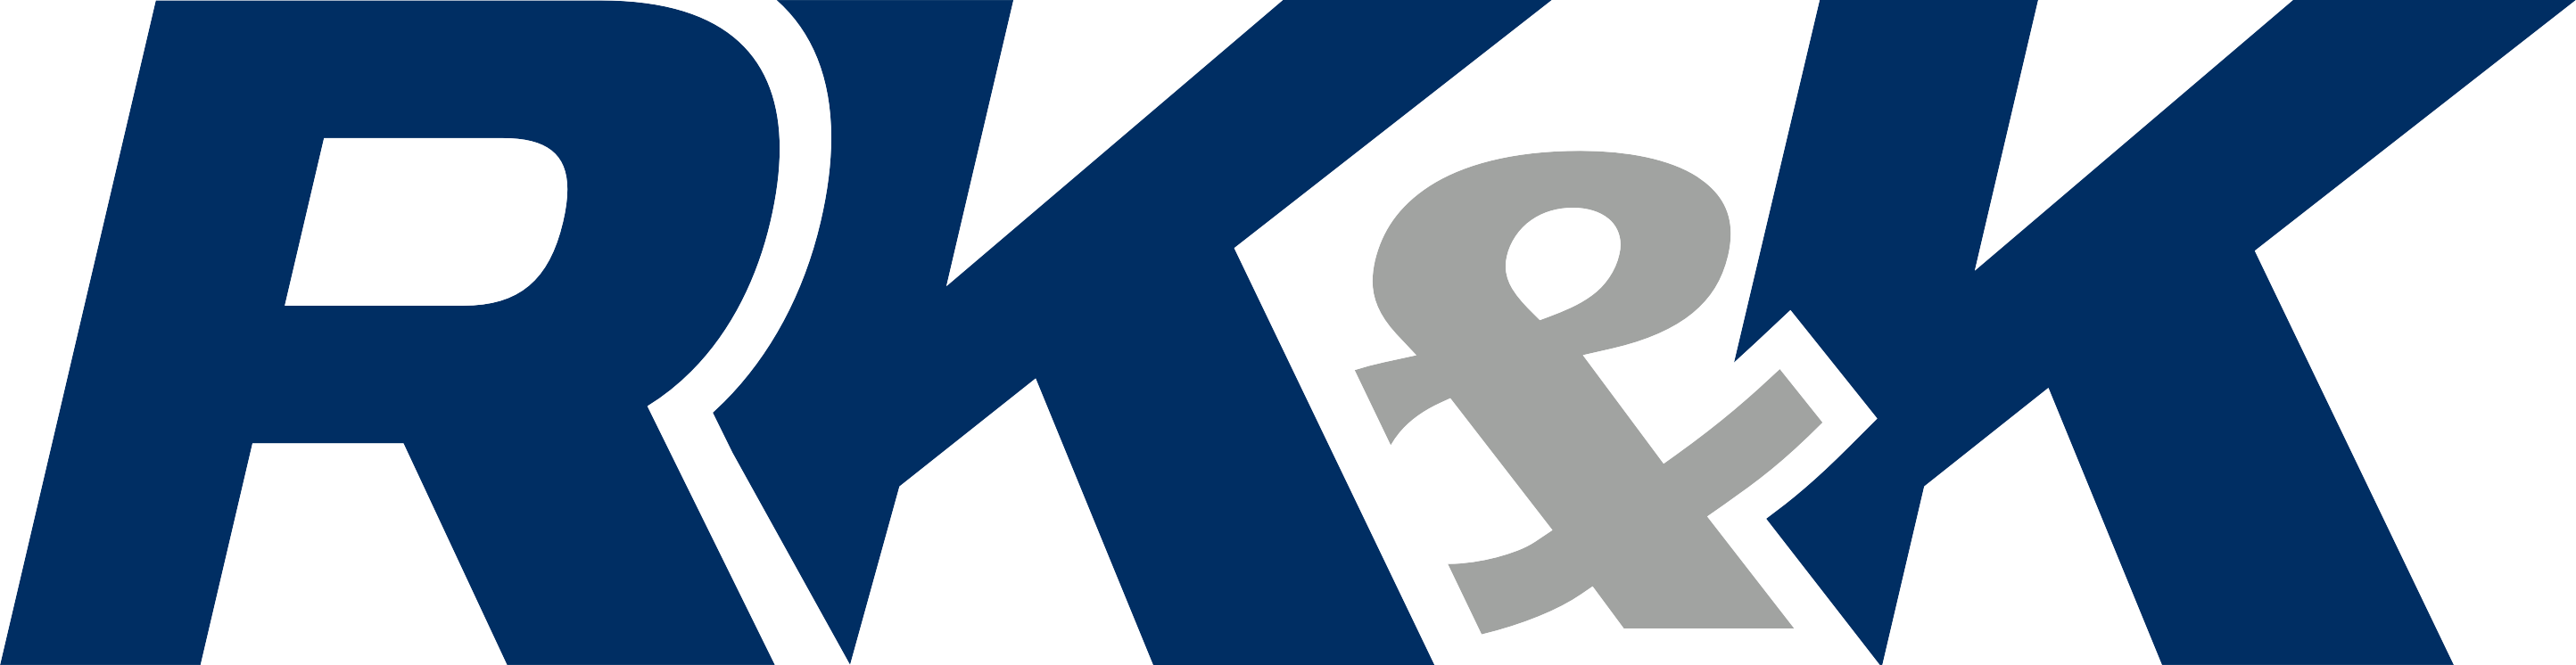 RK&K Logo